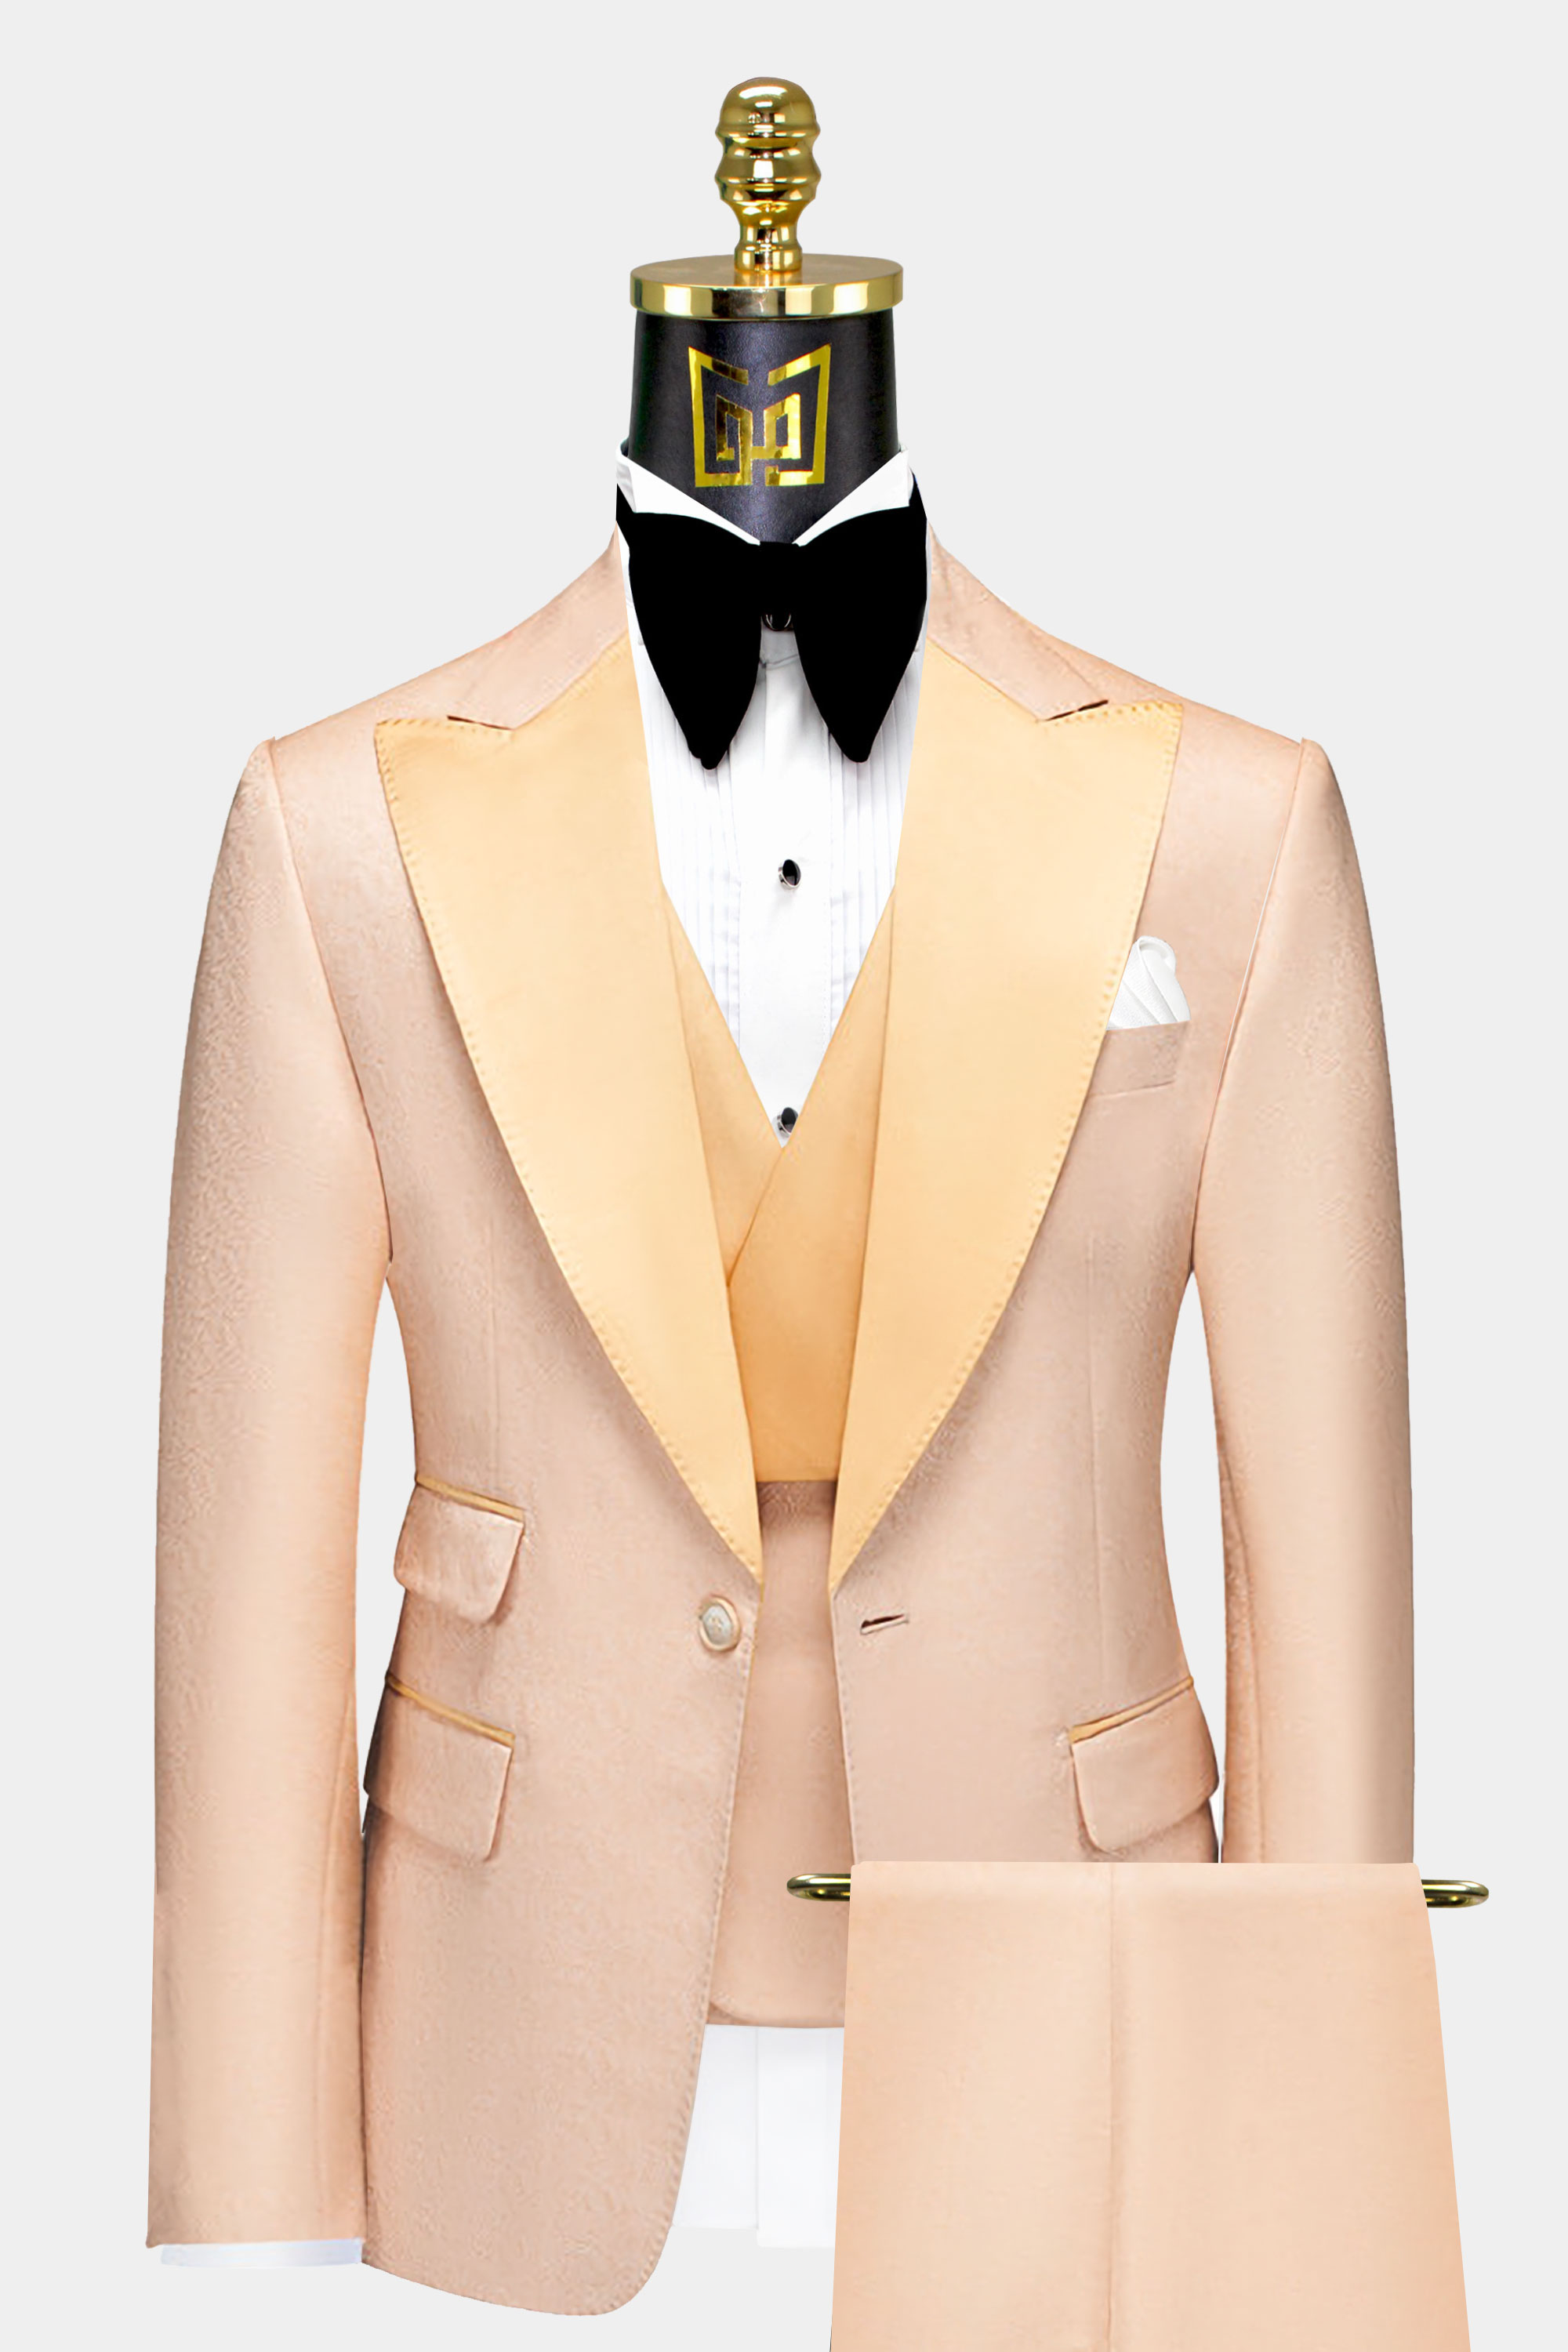 Mens-Beige-Tuxedo-Groom-Wedding-Prom-Suit-from-Gentlemansguru.com